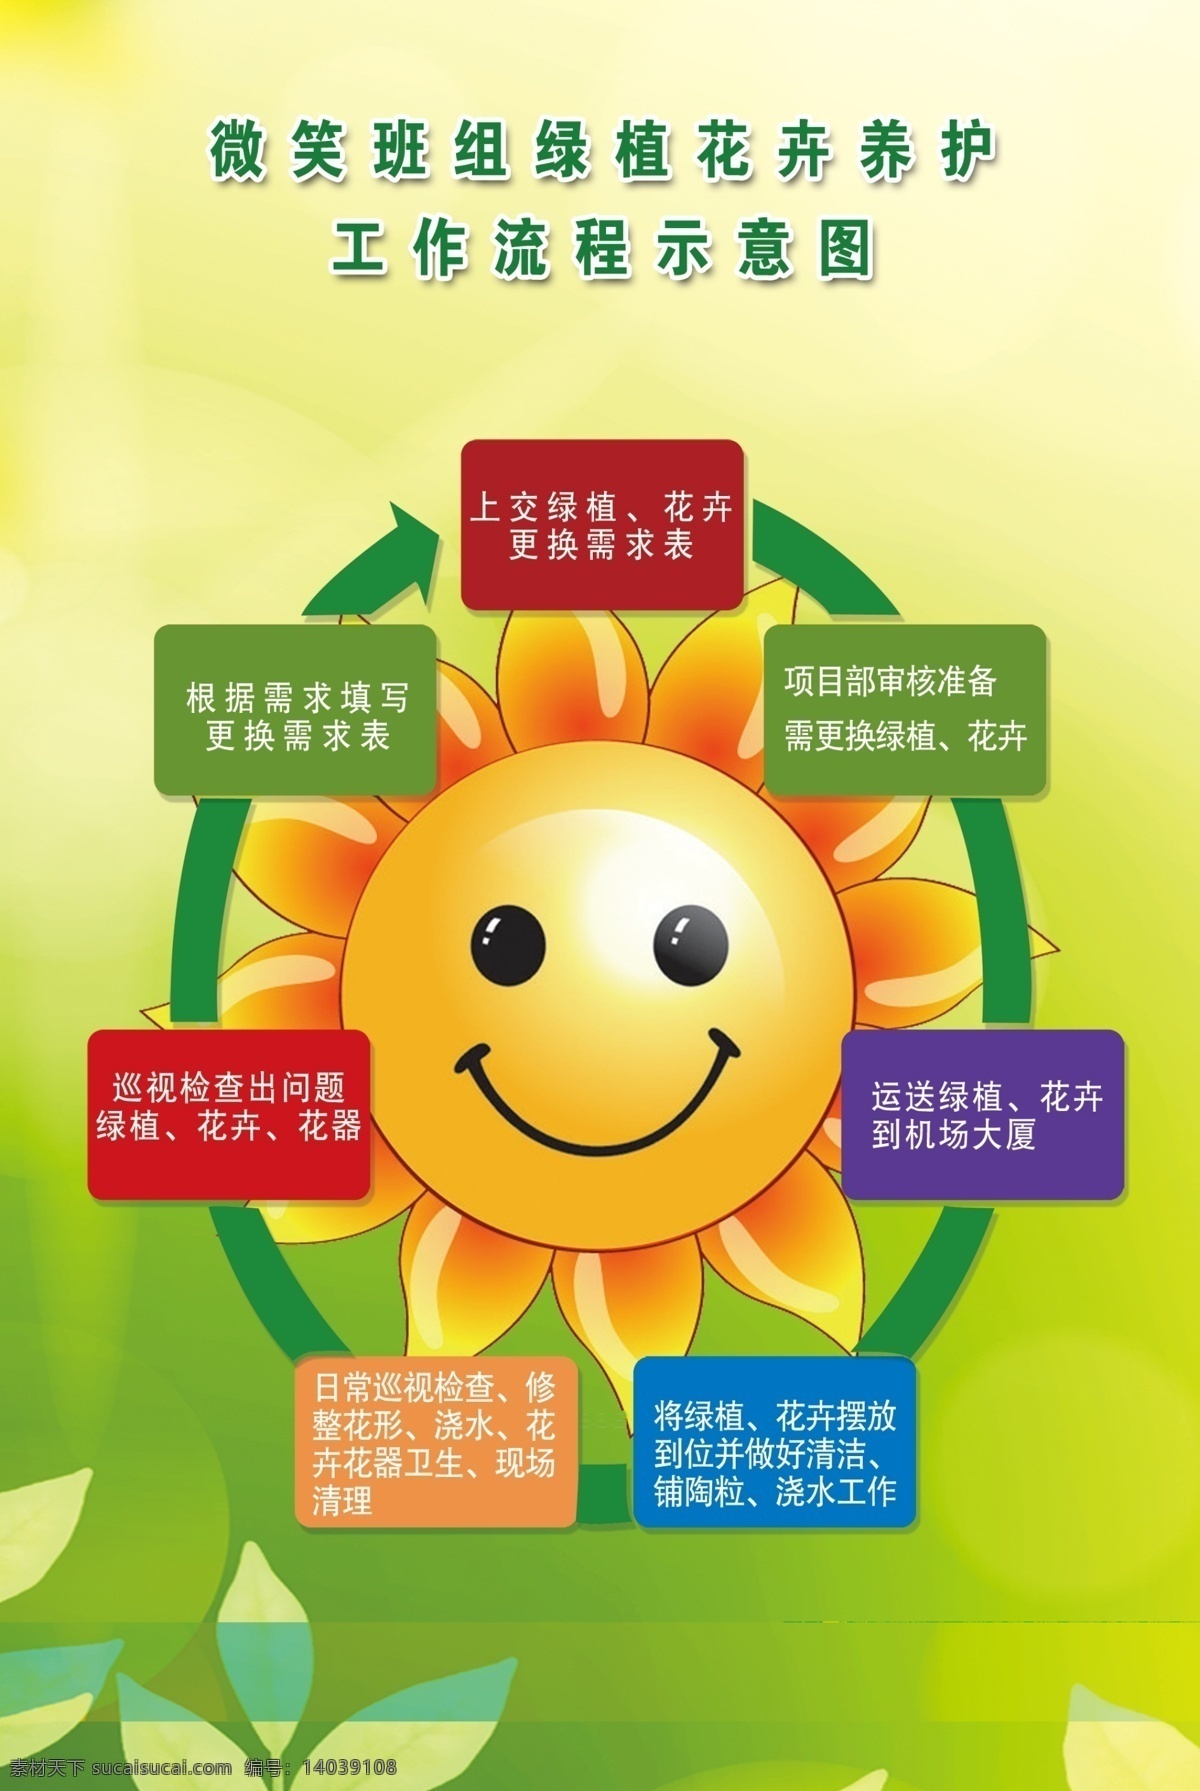 花卉养护 流程展板 流程图 卡通向日葵 笑脸 花朵 葵花 箭头 绿色 背景 浅绿 树叶 展板 方框 花卉 种植